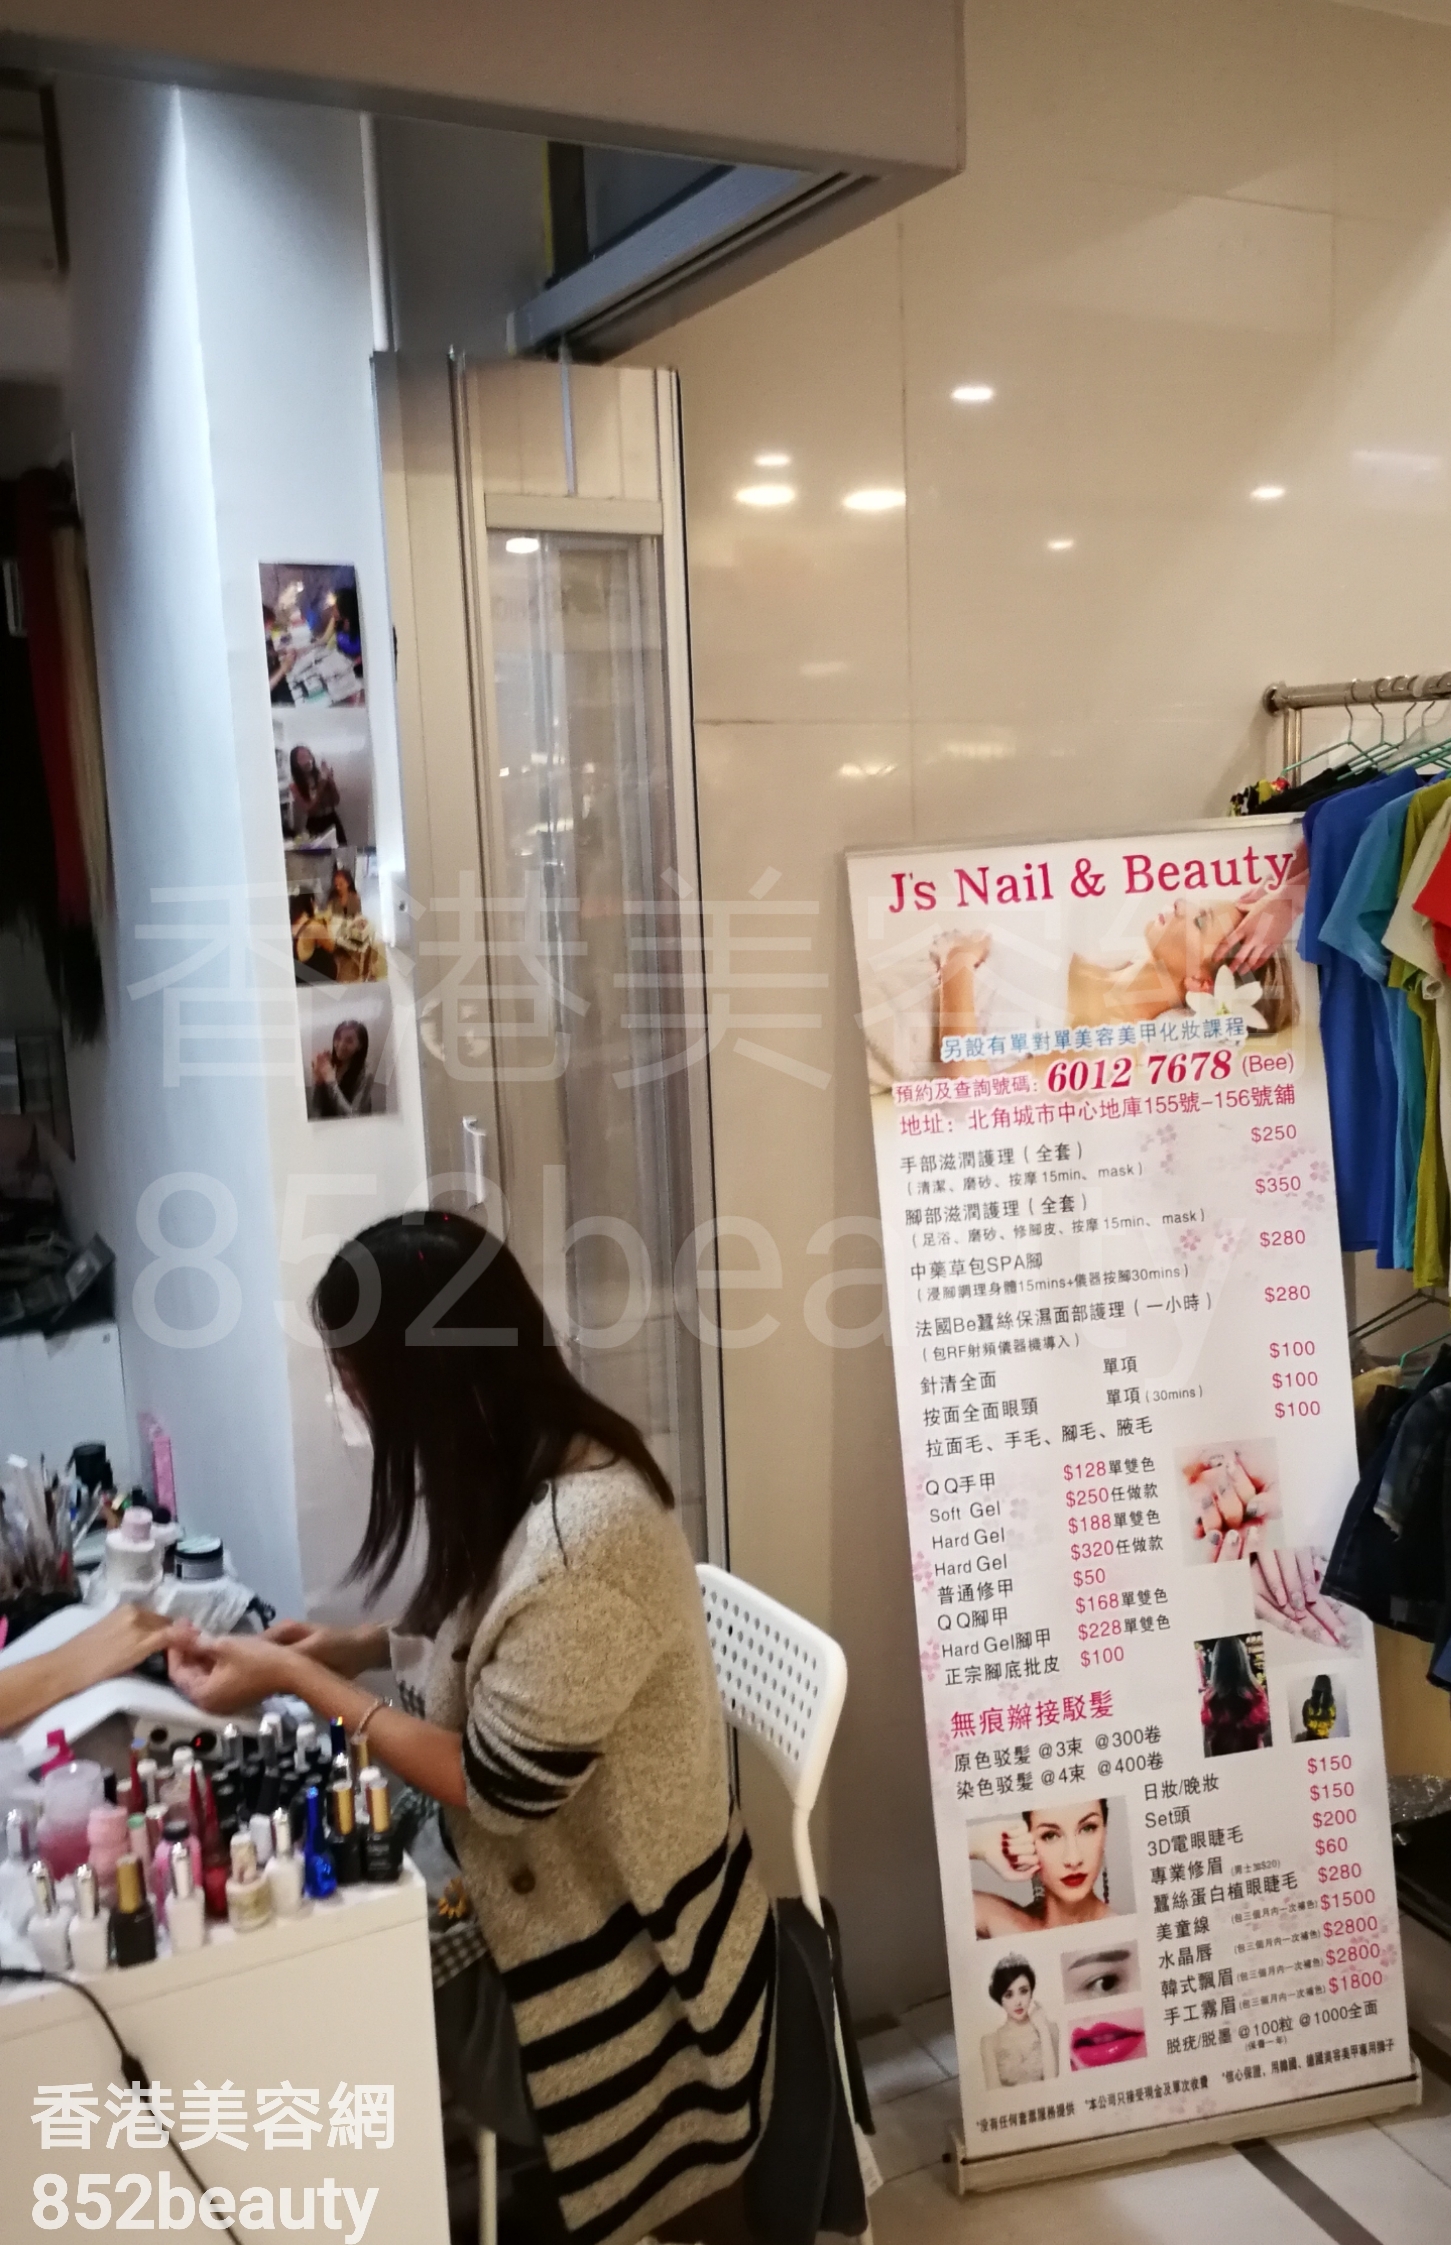 香港美容網 Hong Kong Beauty Salon 美容院 / 美容師: J's Nail & Beauty